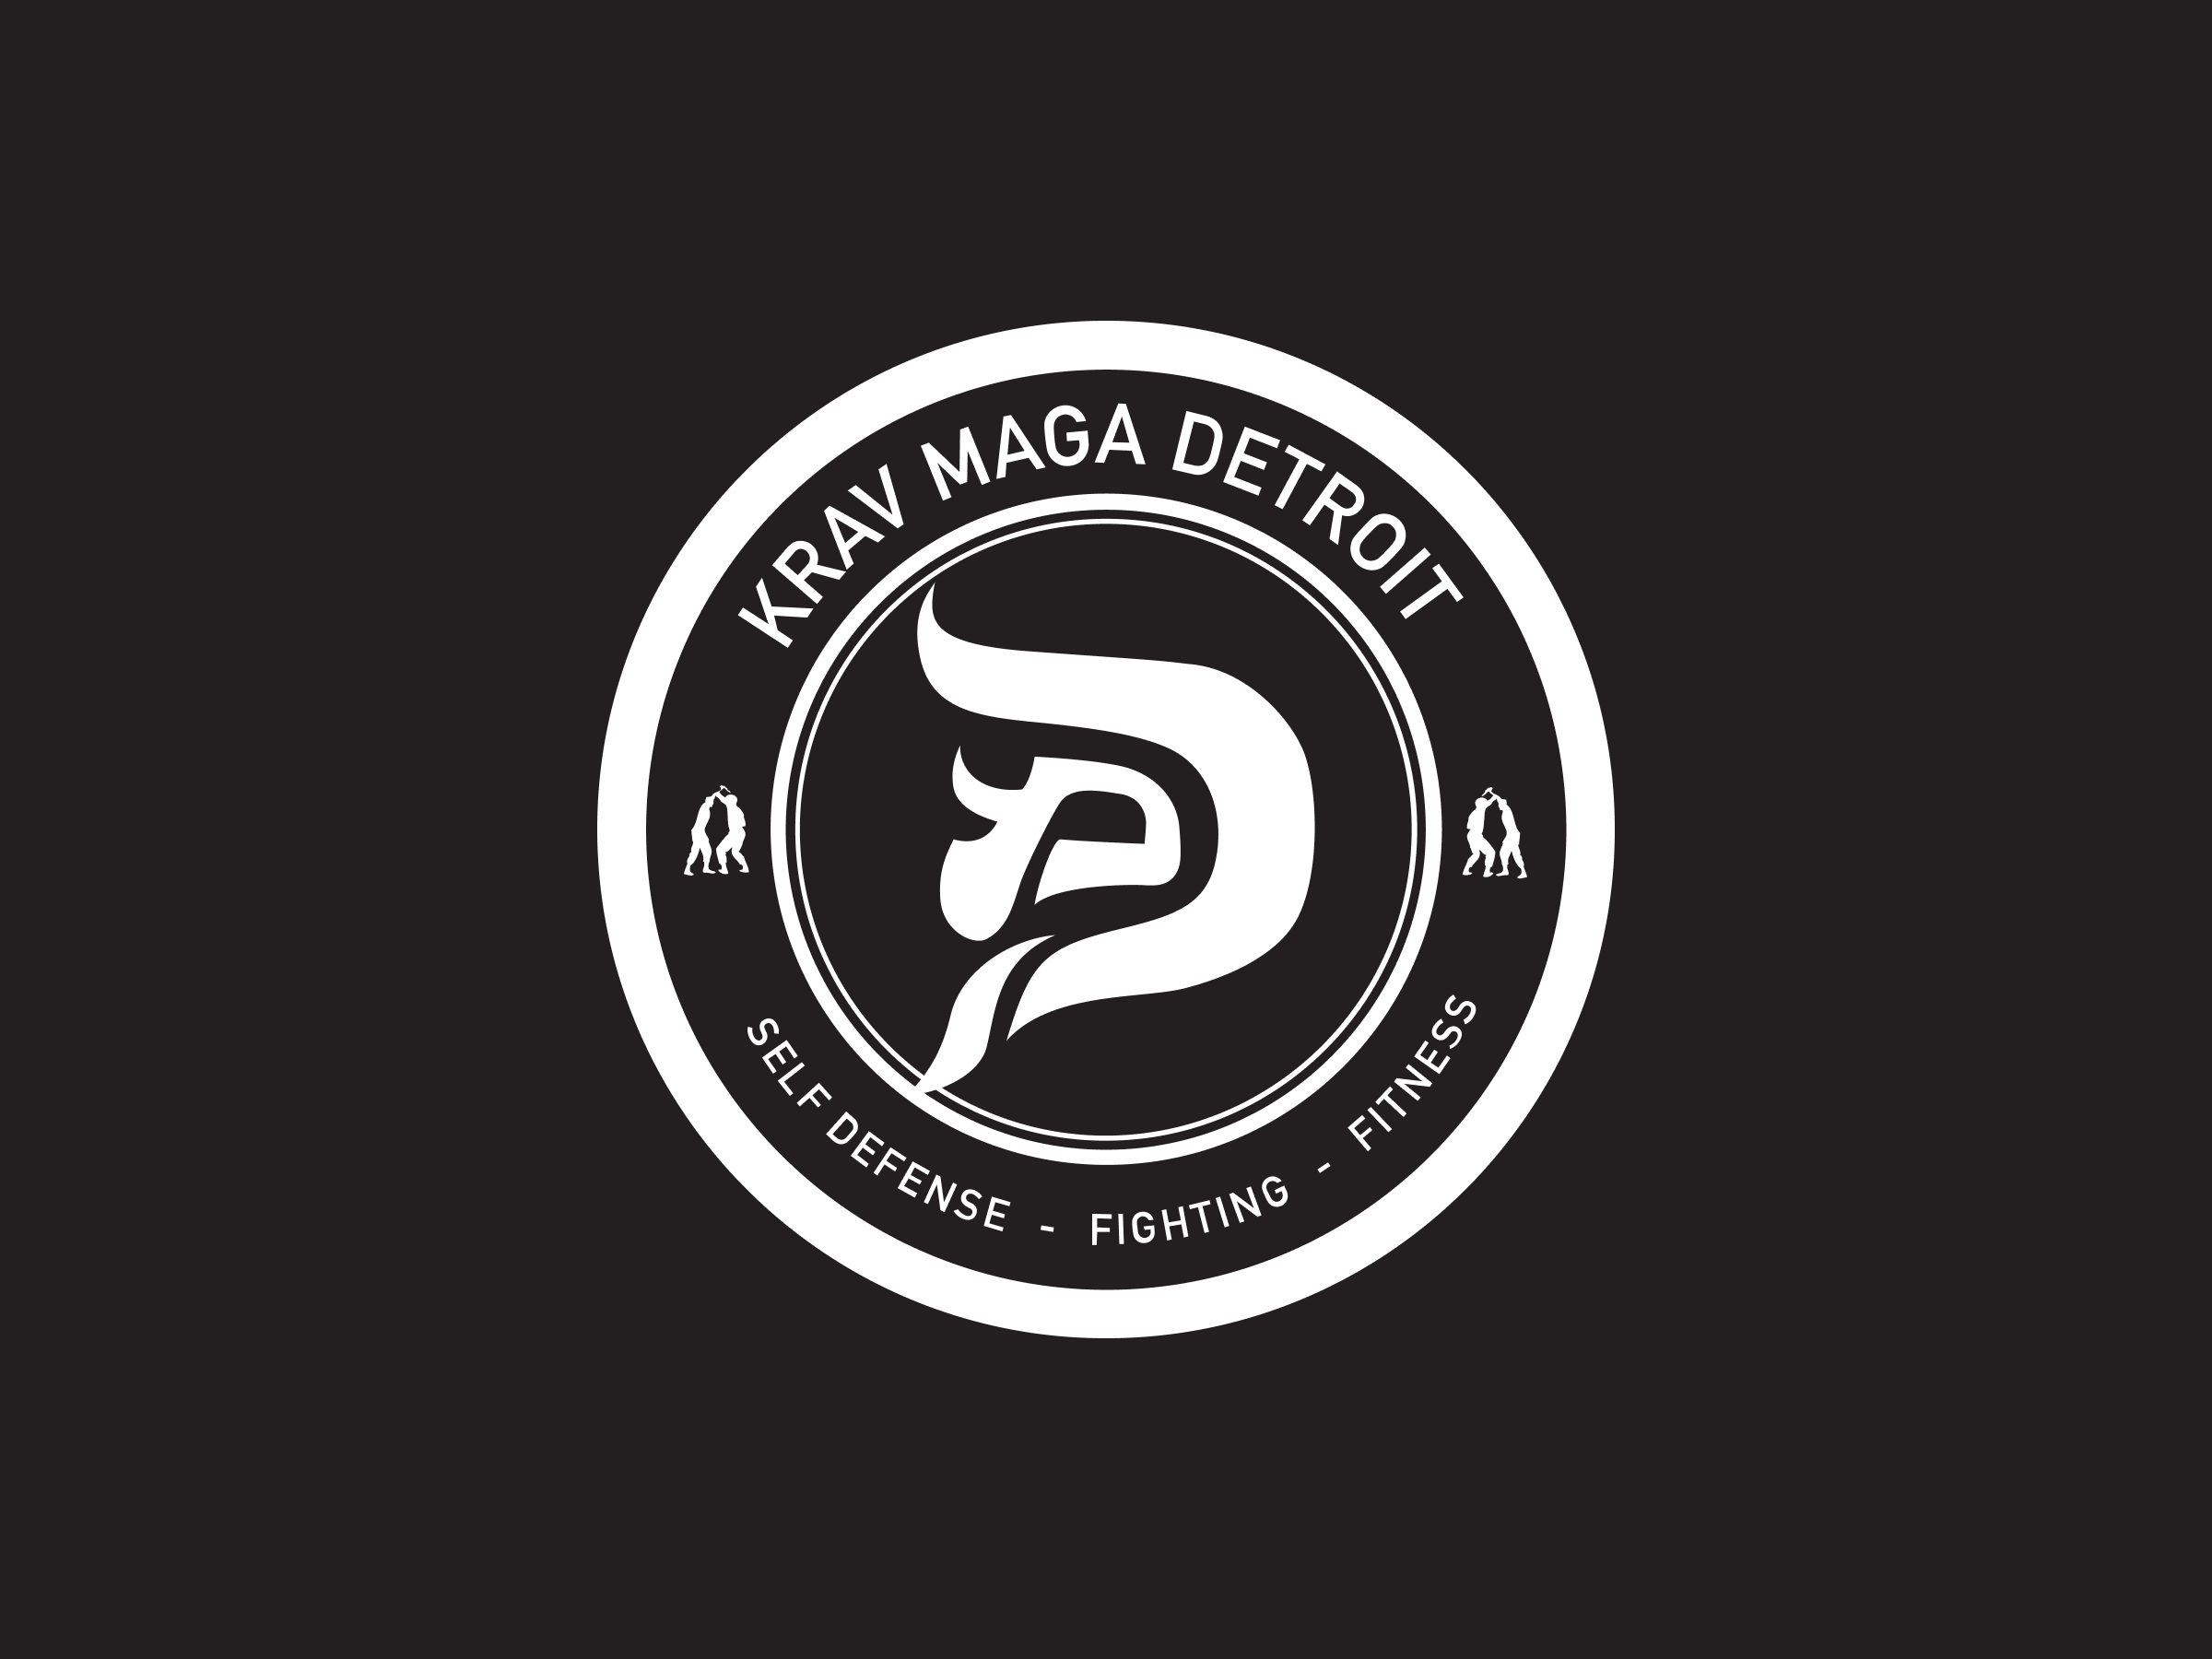 Krav Maga Detroit (Certification Seal)